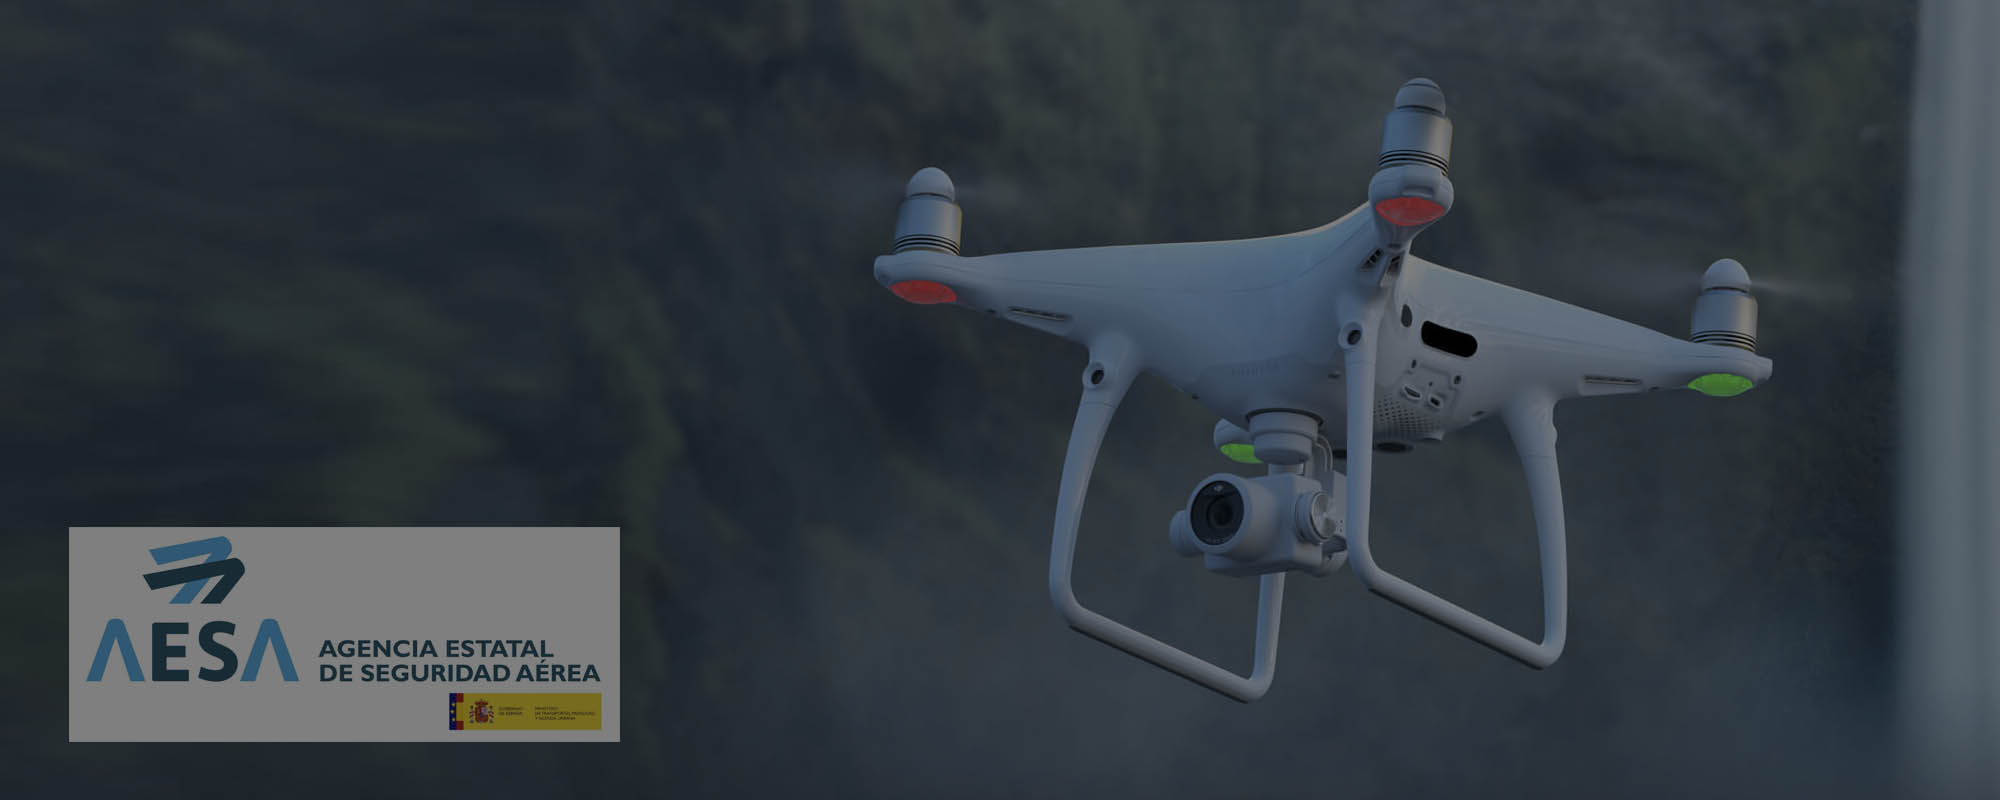 Tenemos autorización de AESA para realizar operaciones con drones sobre ciudades y en zonas de control de aeropuertos